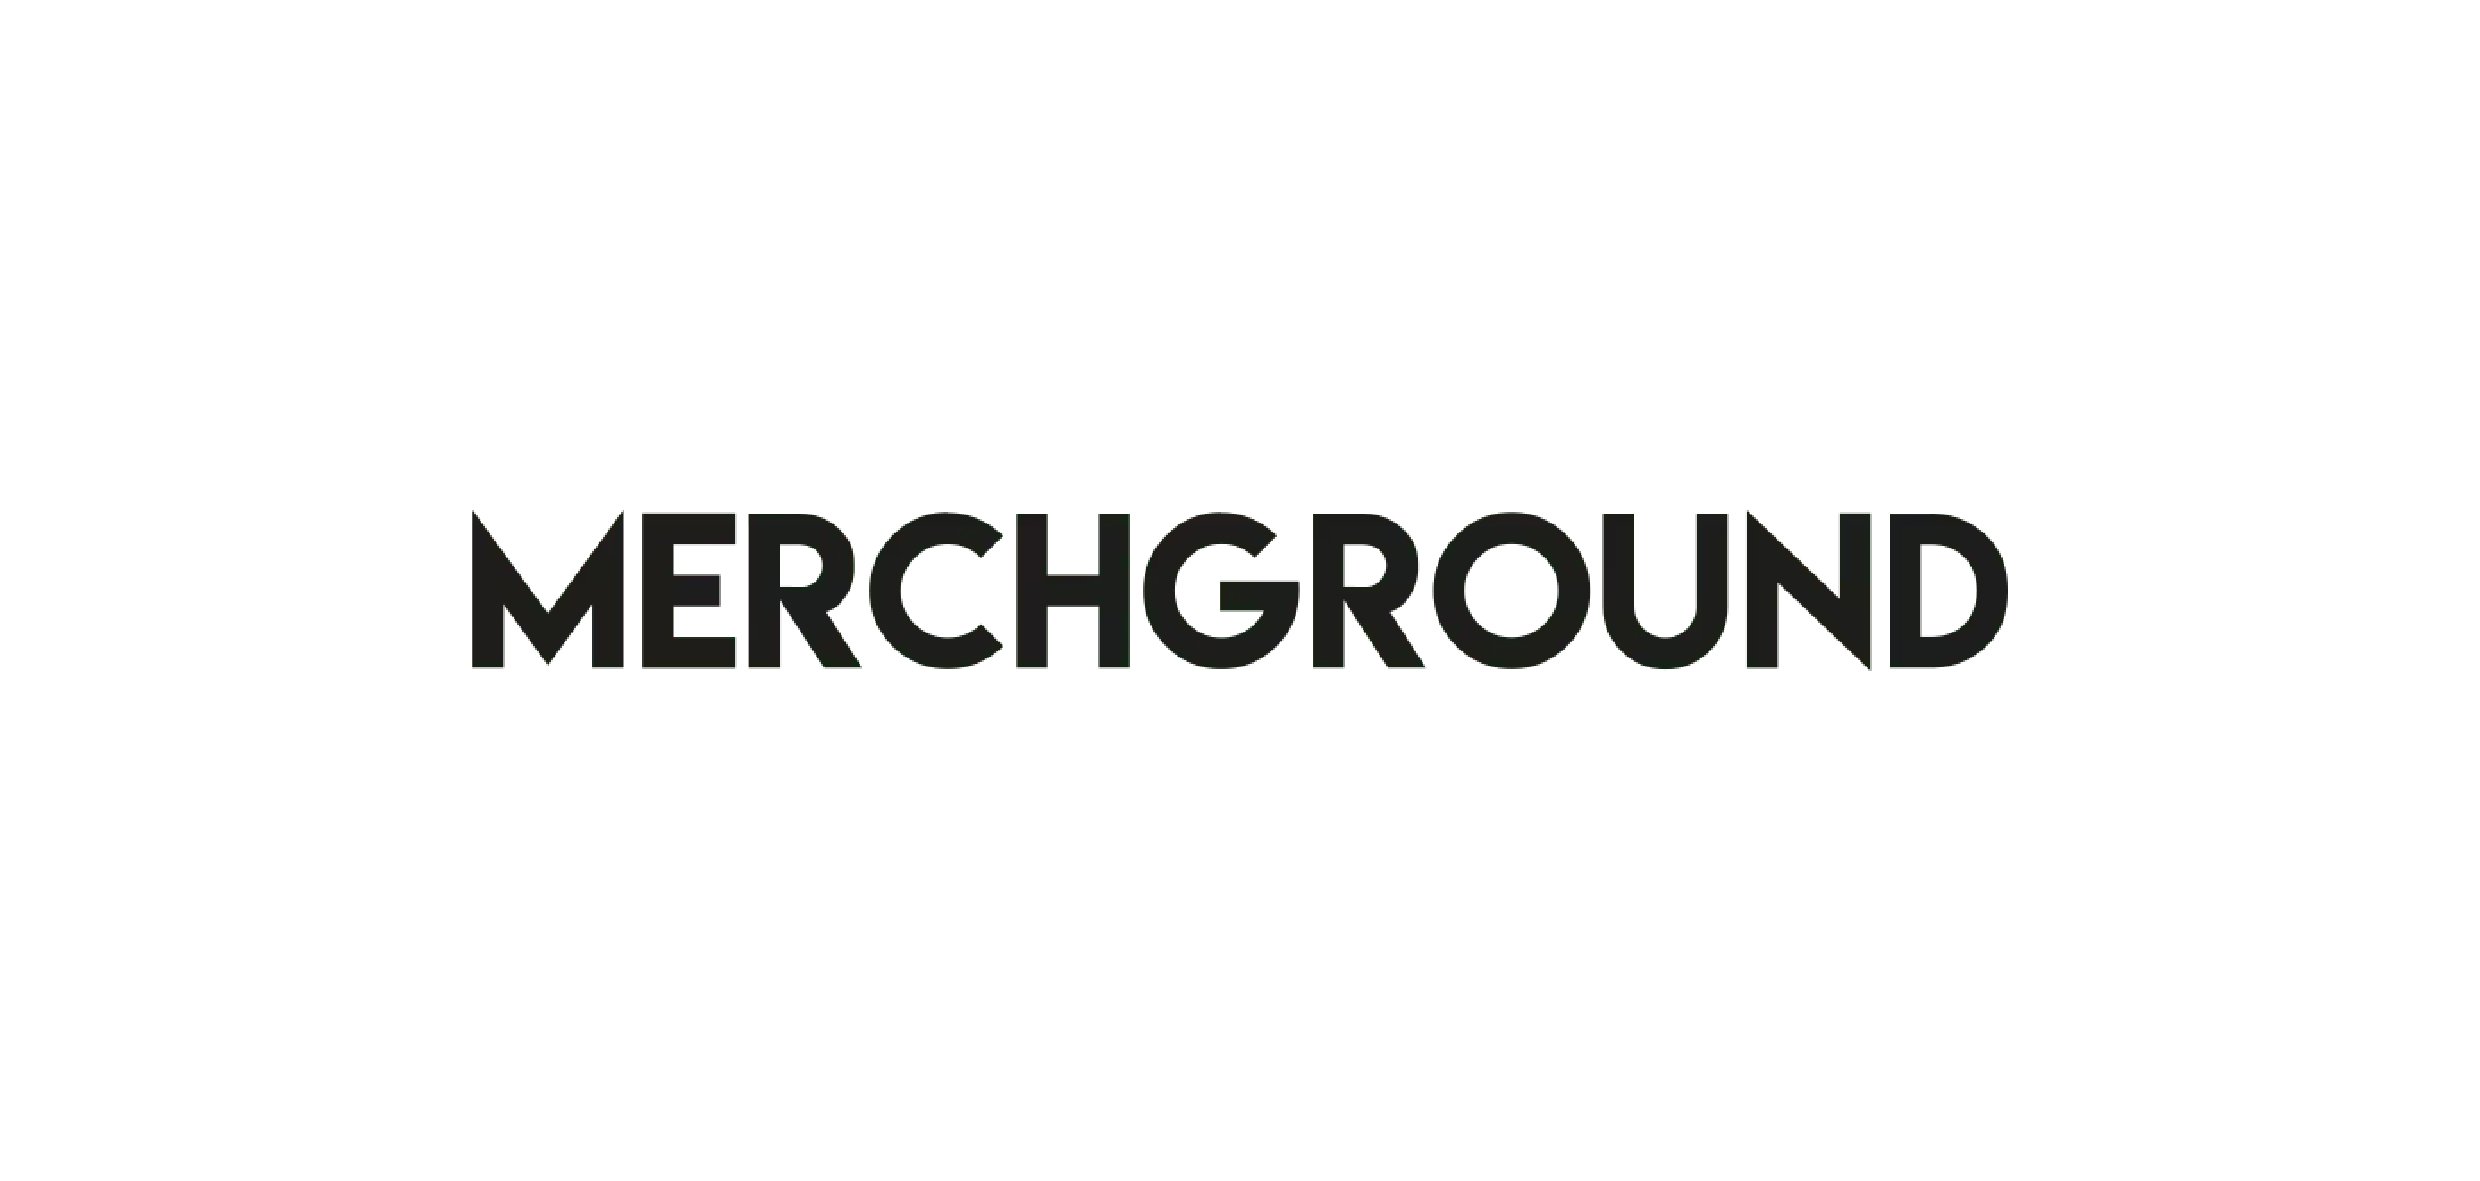 MERCHGROUND - Außendarstellung, Corporate Identity, Webdesign und Shop